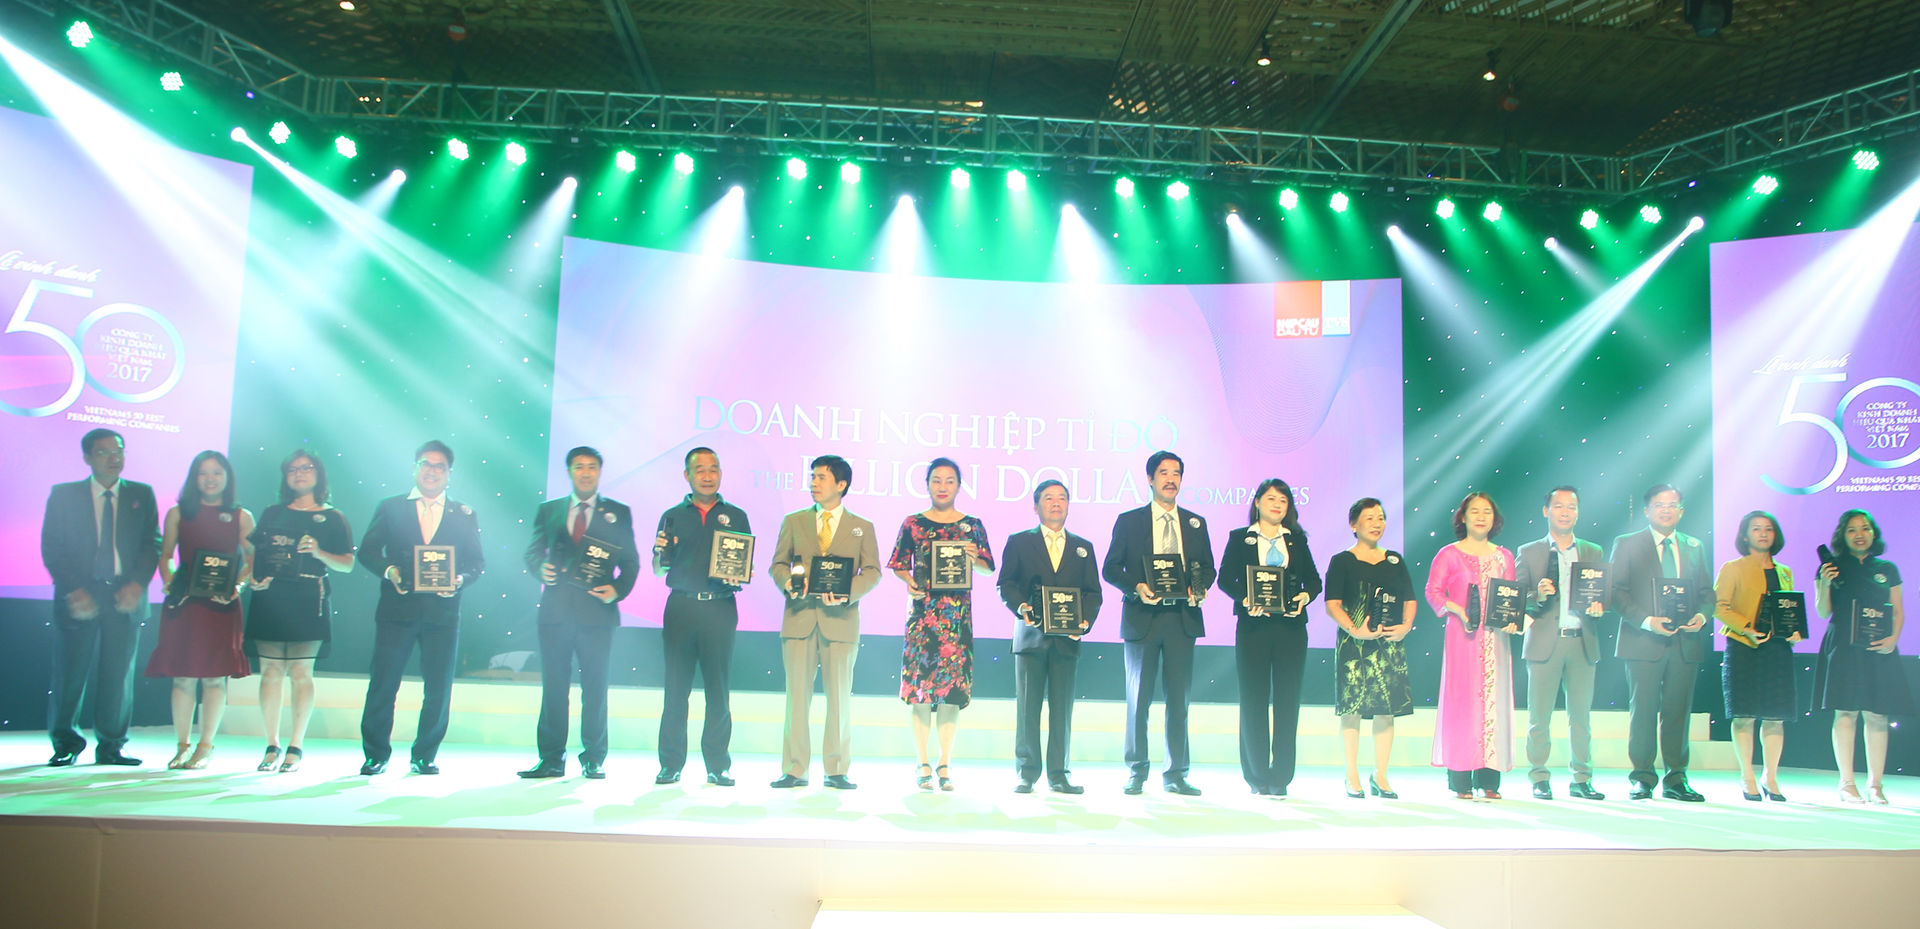 Đại điện Novaland nhận chứng nhận “50 Công ty kinh doanh hiệu quả nhất Việt Nam” tại lễ vinh danh.  